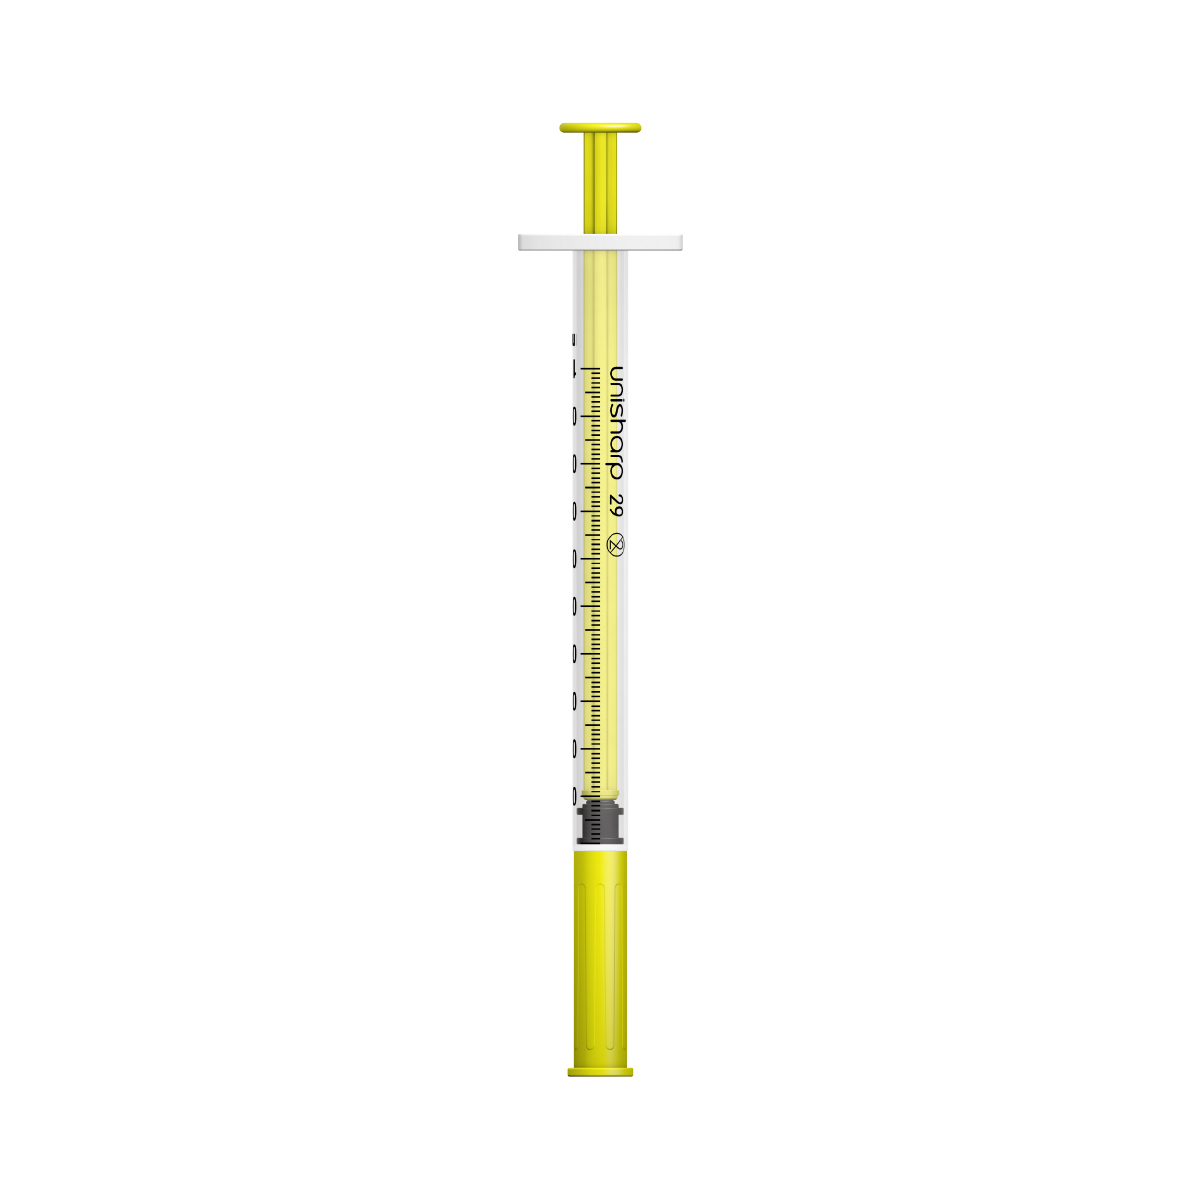 Unisharp 1ml 29G fixed needle syringe: yellow